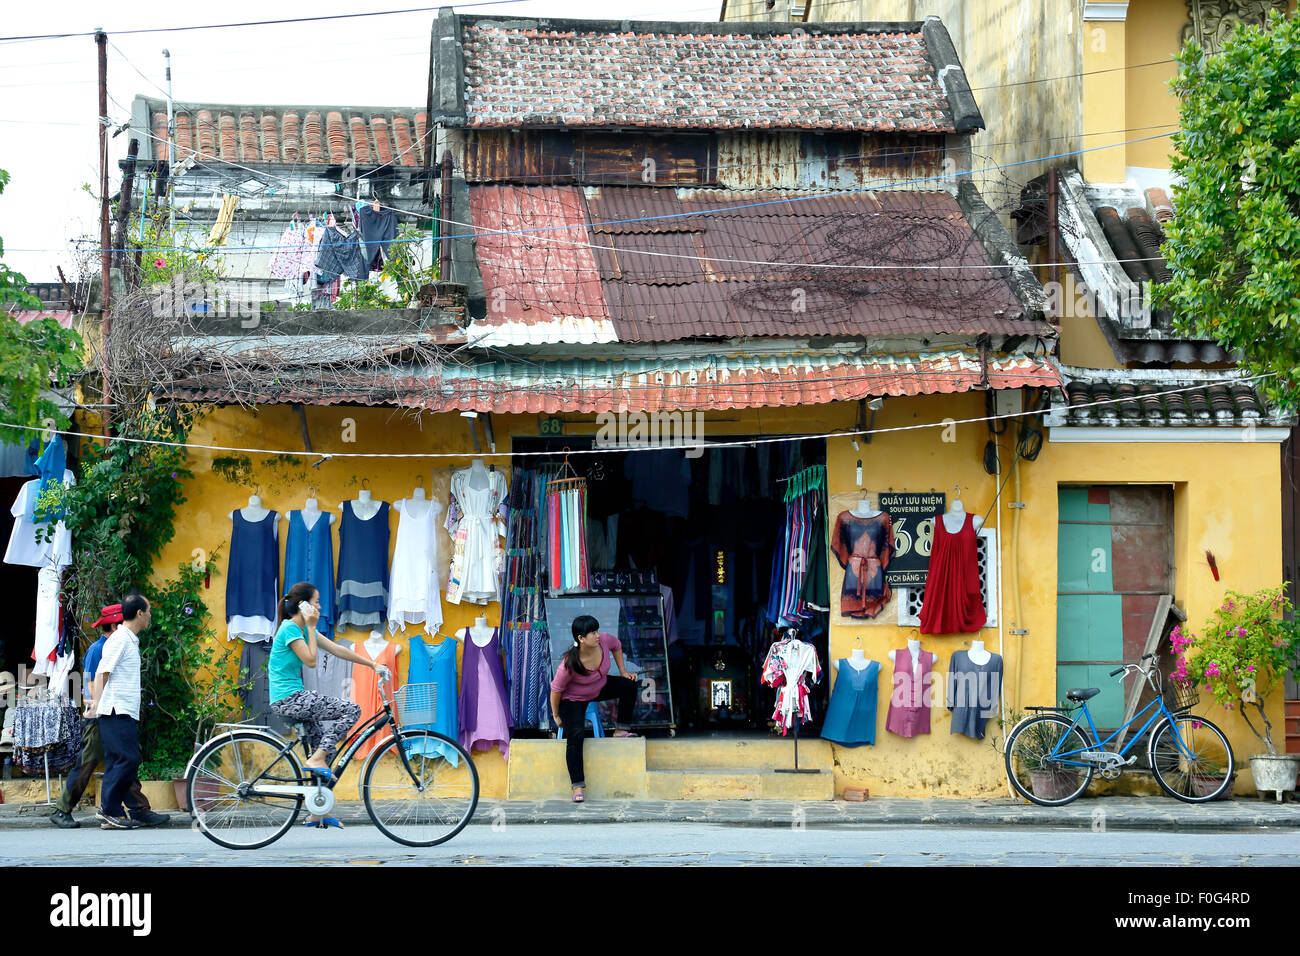 Tienda de ropa de mujer ciclismo pasado, Hoi An, Vietnam Foto de stock